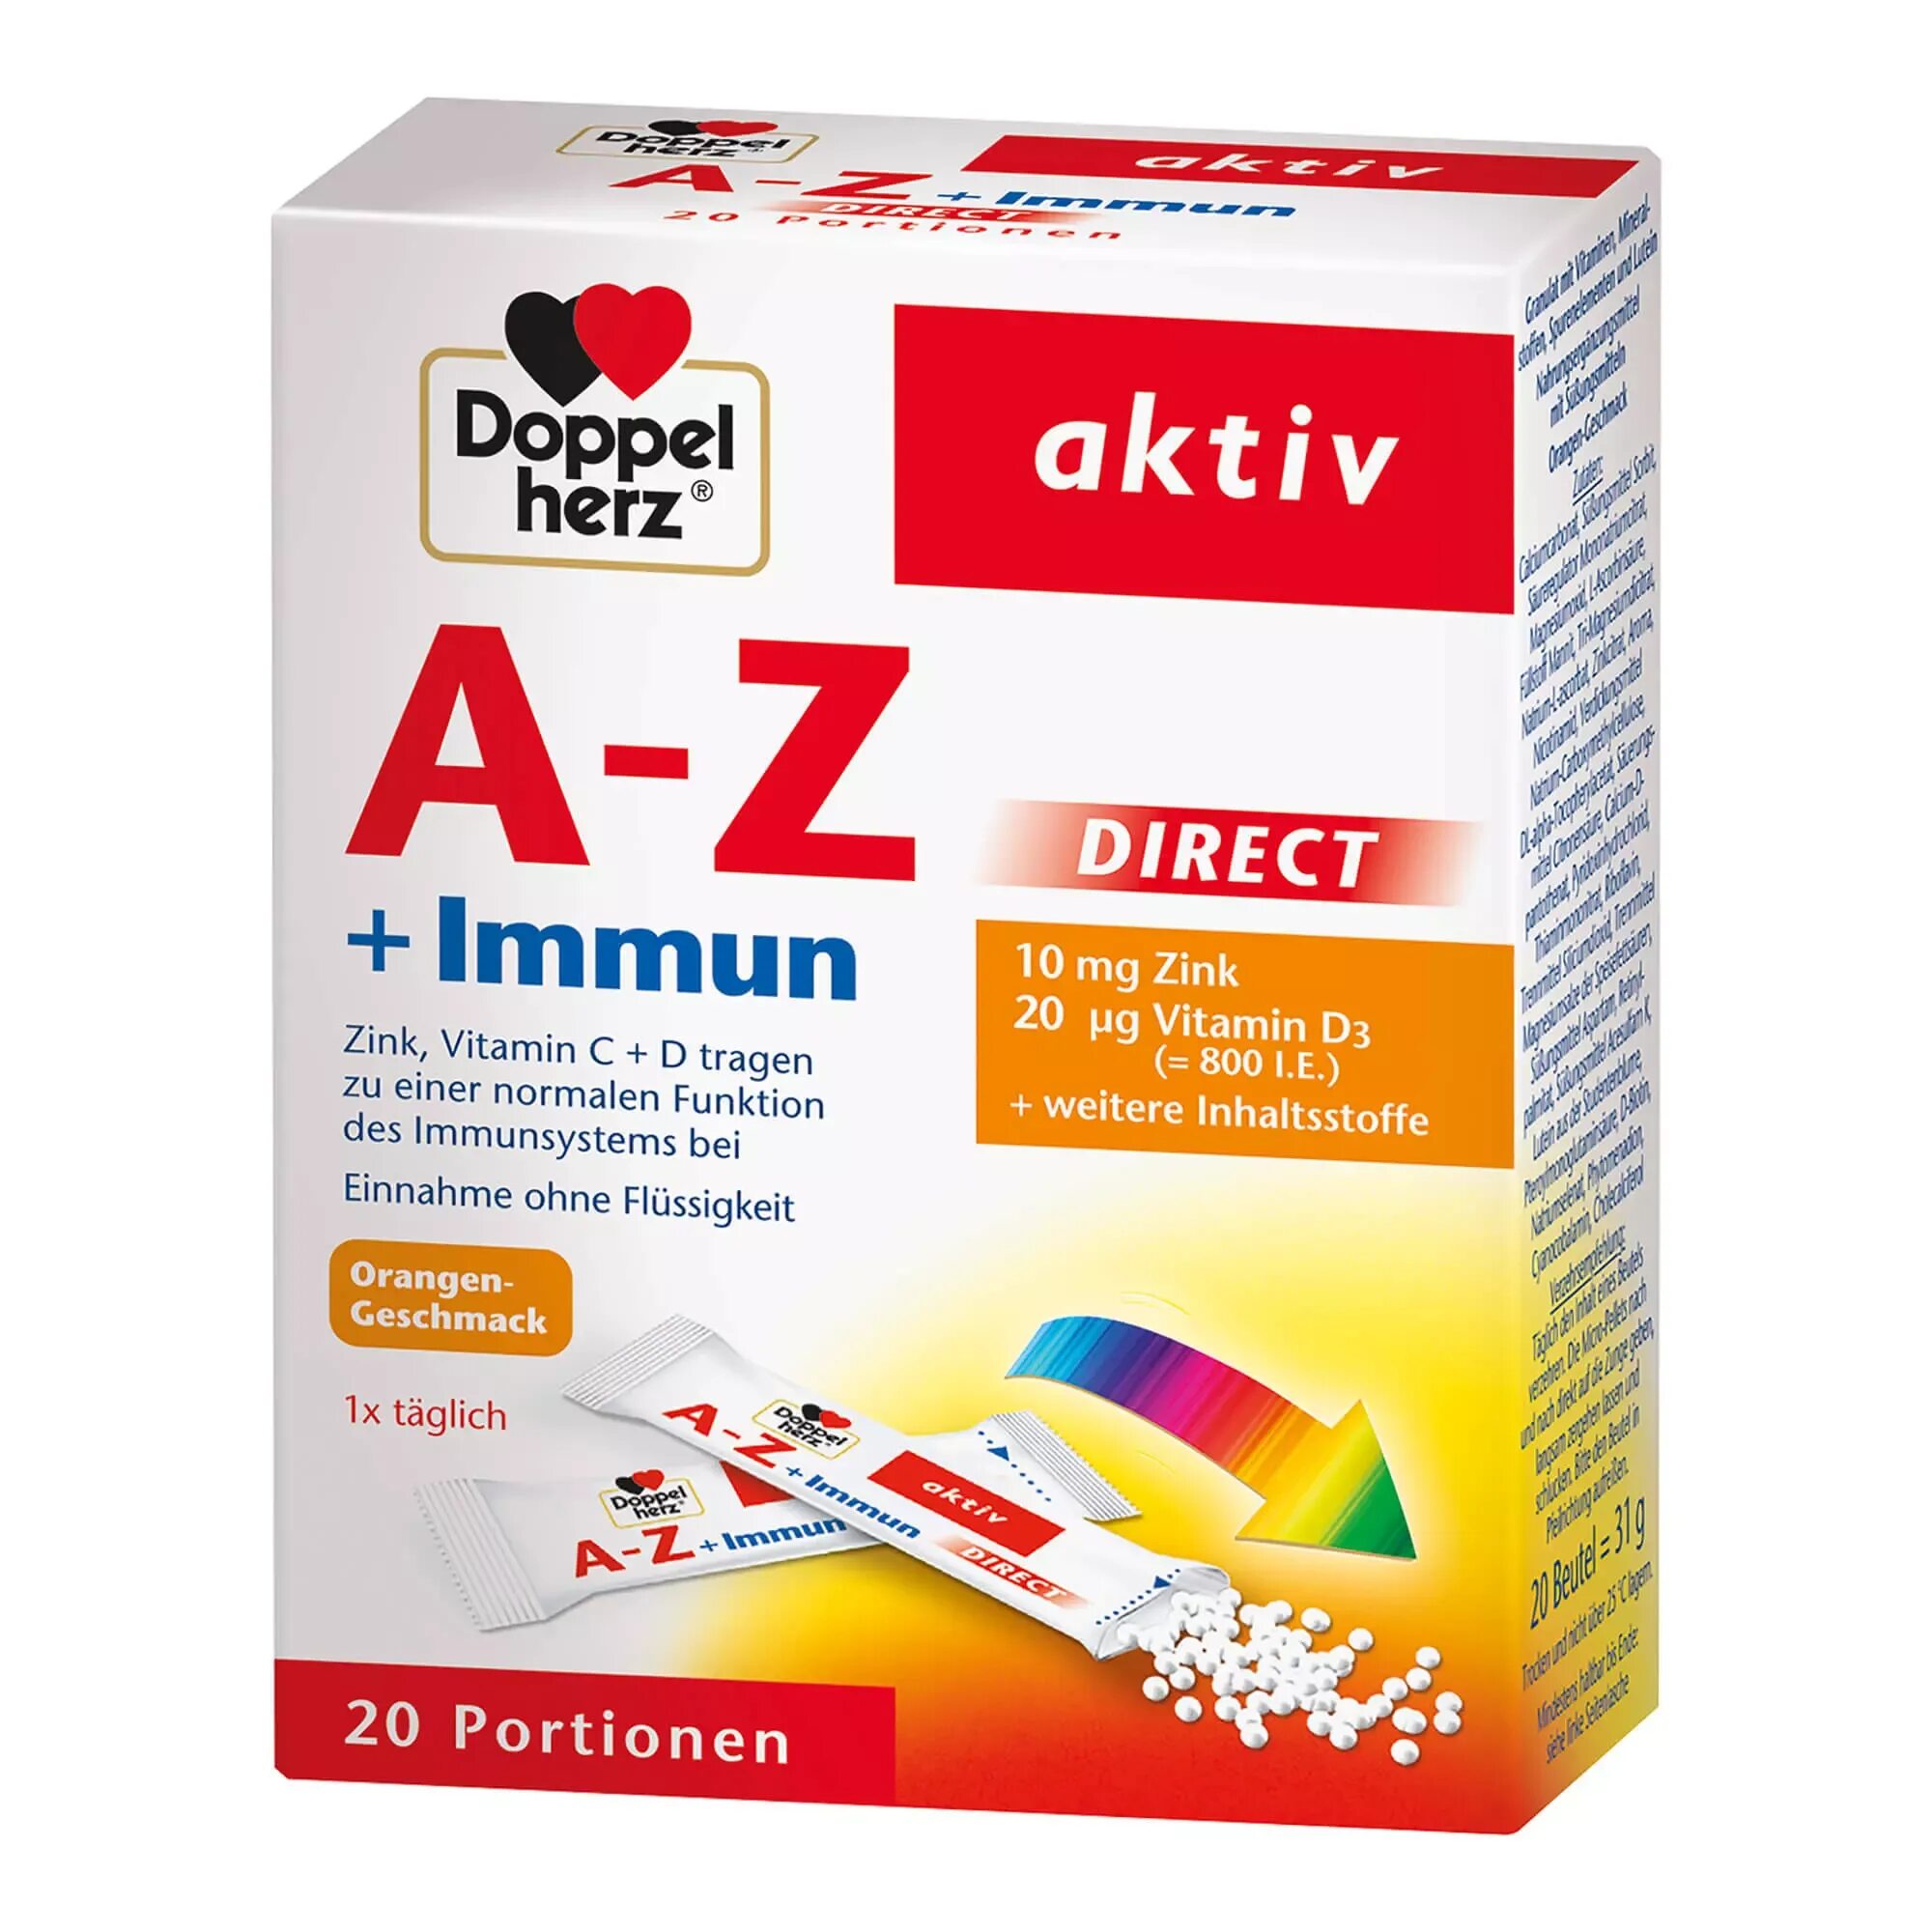 Doppel Herz a-z +Immun. A-Z aktiv это. A-Z complete витамины. Doppel Herz Актив при простуде. Иммун актив витамины